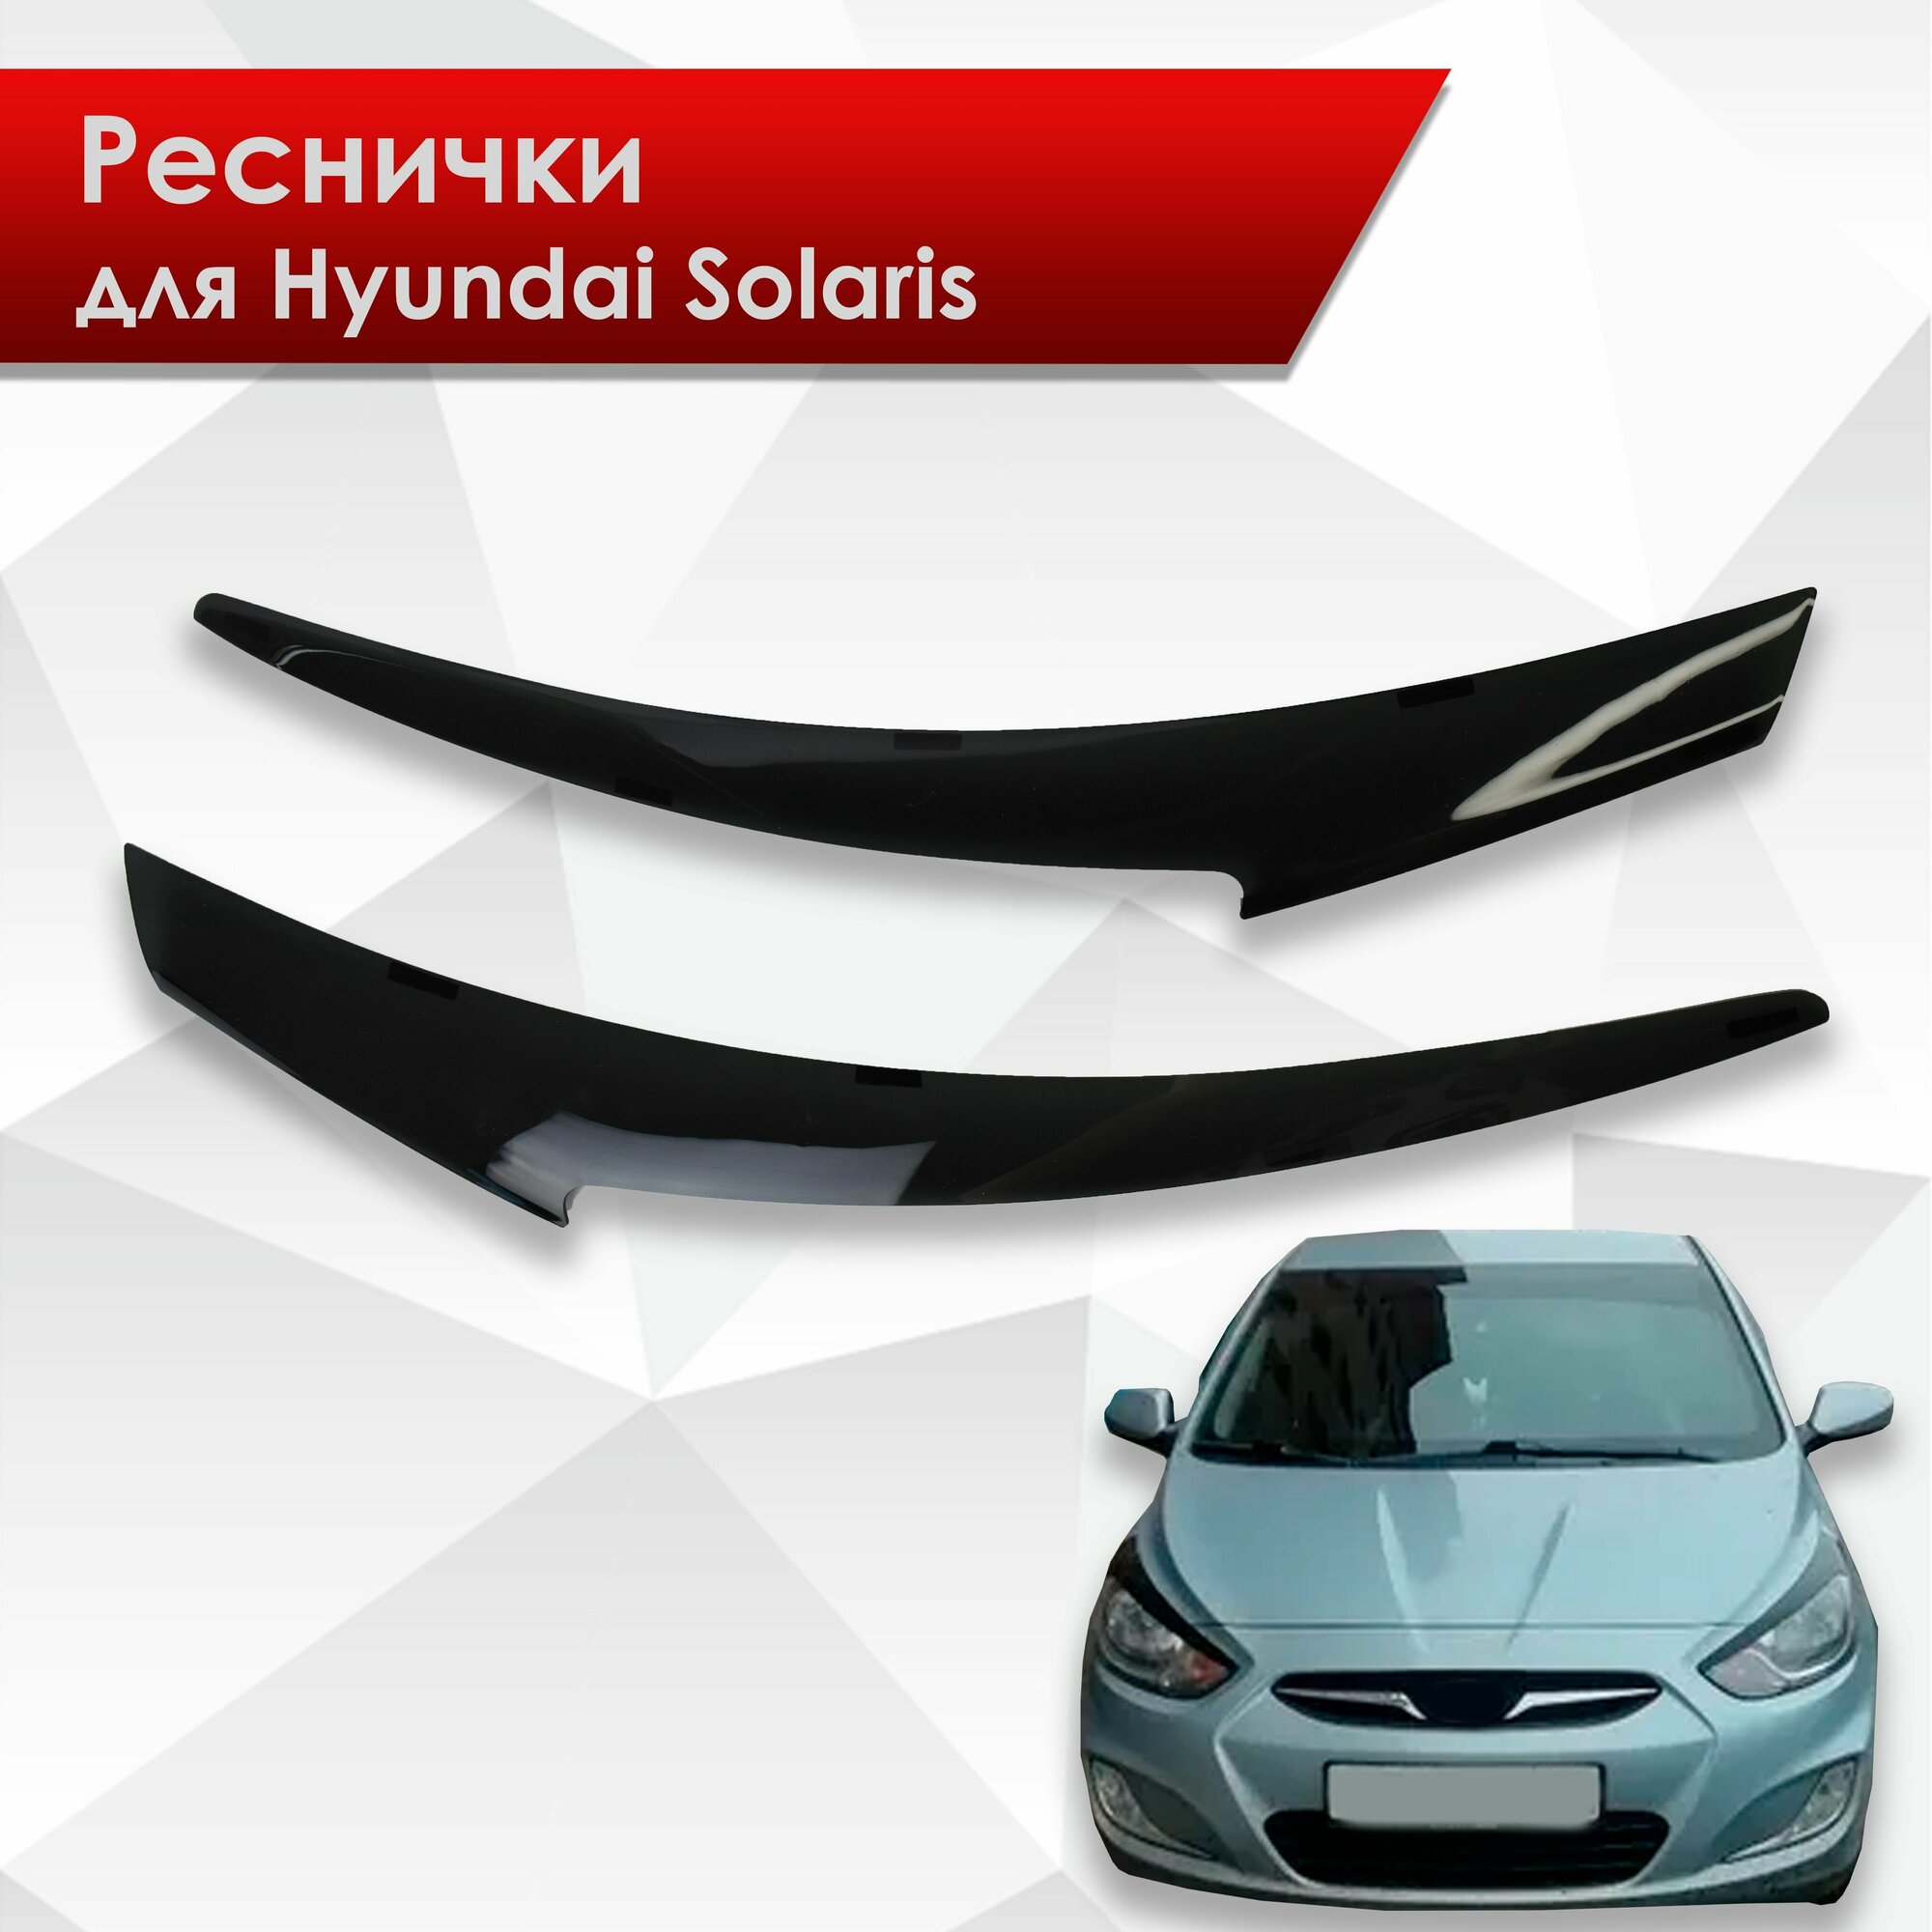 Накладки на фары / Реснички для Hyundai Solaris / Хюндай Солярис 2011-2014